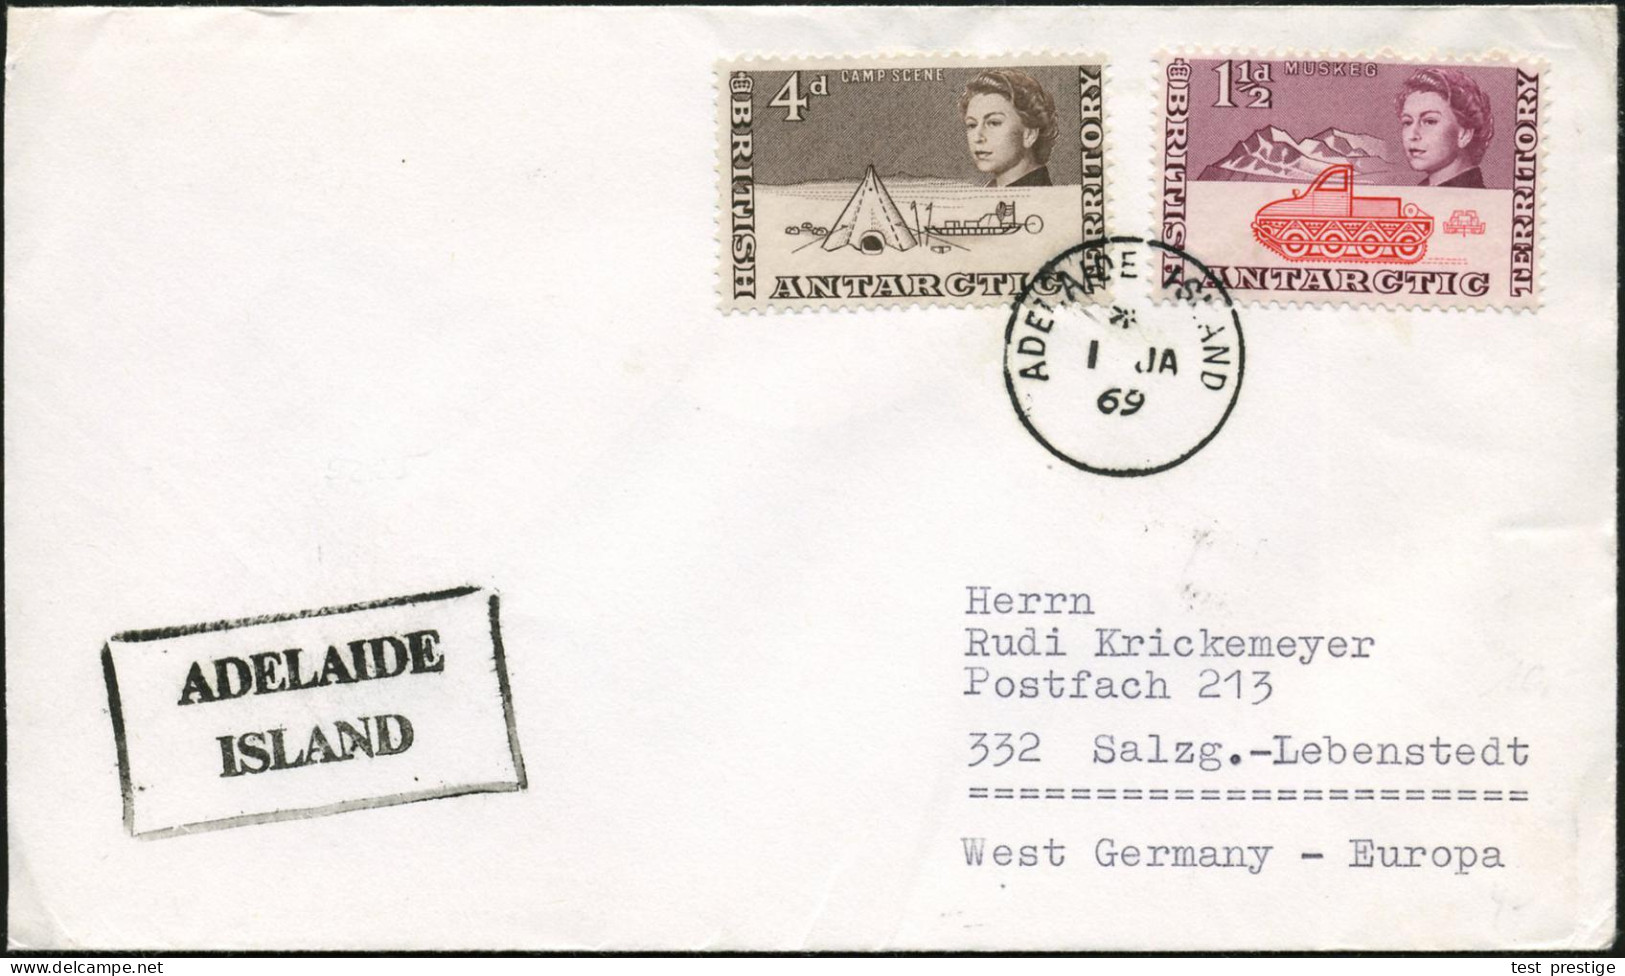 BRITISCHE ANTARKTIS 1969 (1.1.) 1K: ADELAIDE ISLAND + Ra.2: ADELAIDE/ISLAND , Klar Gest. Übersee-Bf. (Mi.3, 7) - ANTARKT - Antarktis-Expeditionen